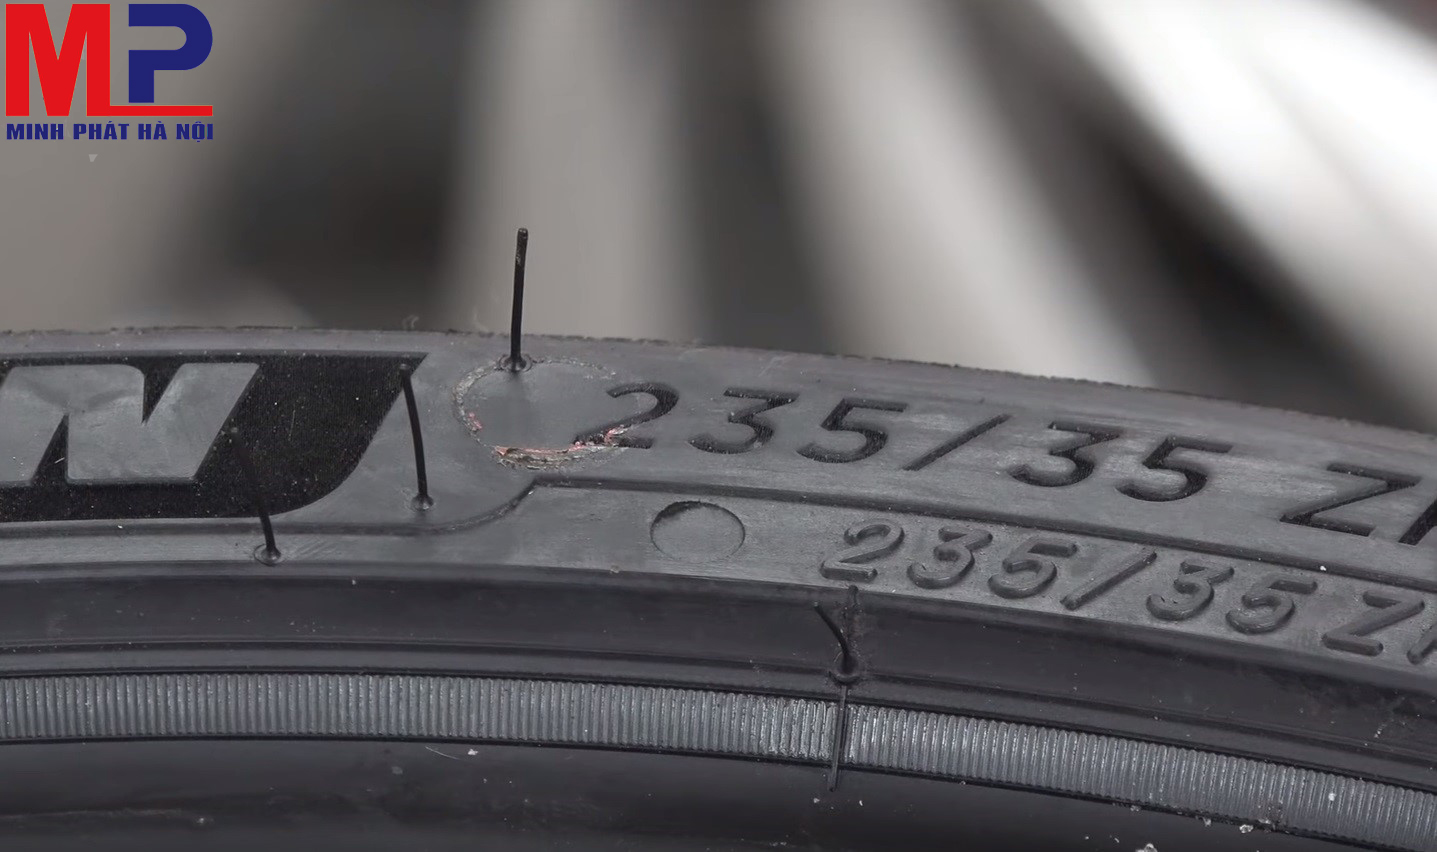 Chọn dòng lốp có thông số kỹ thuật in rõ ràng trên lốp